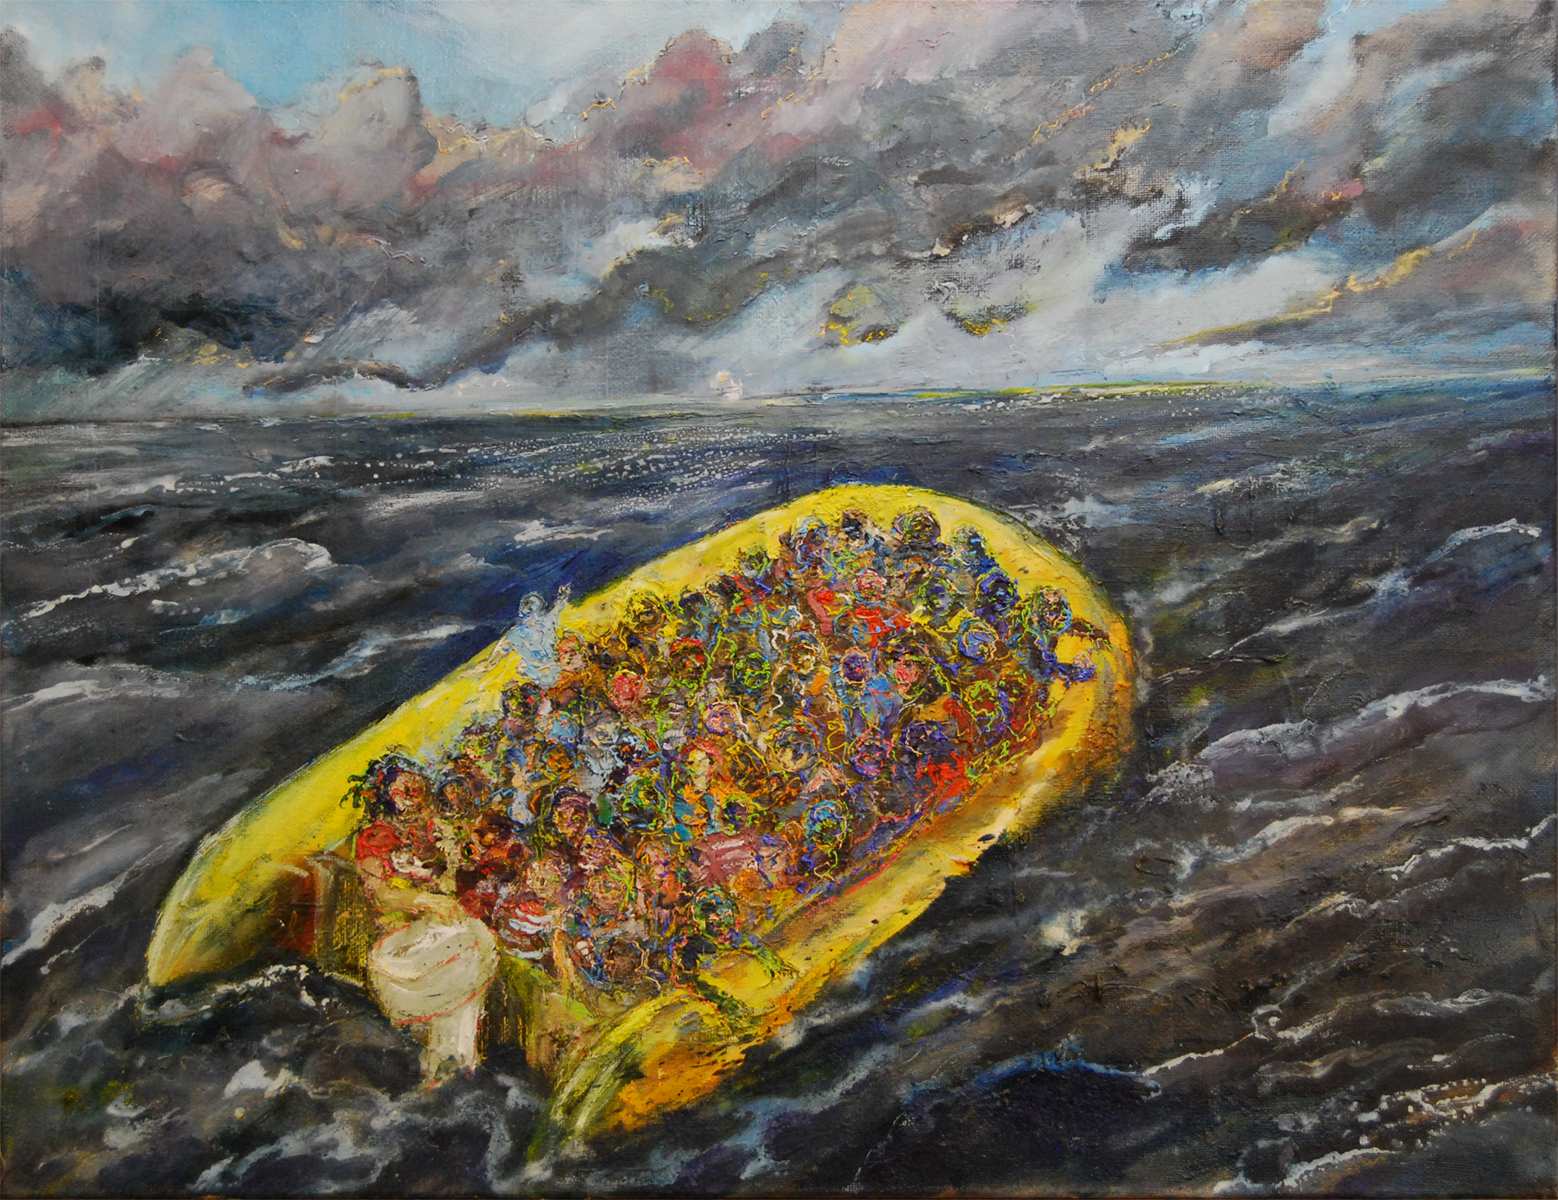 gummibåd - Das knallgelbe Gummiboot, Malerei von Ludwig Plotter aus der Fluidwesen-Serie